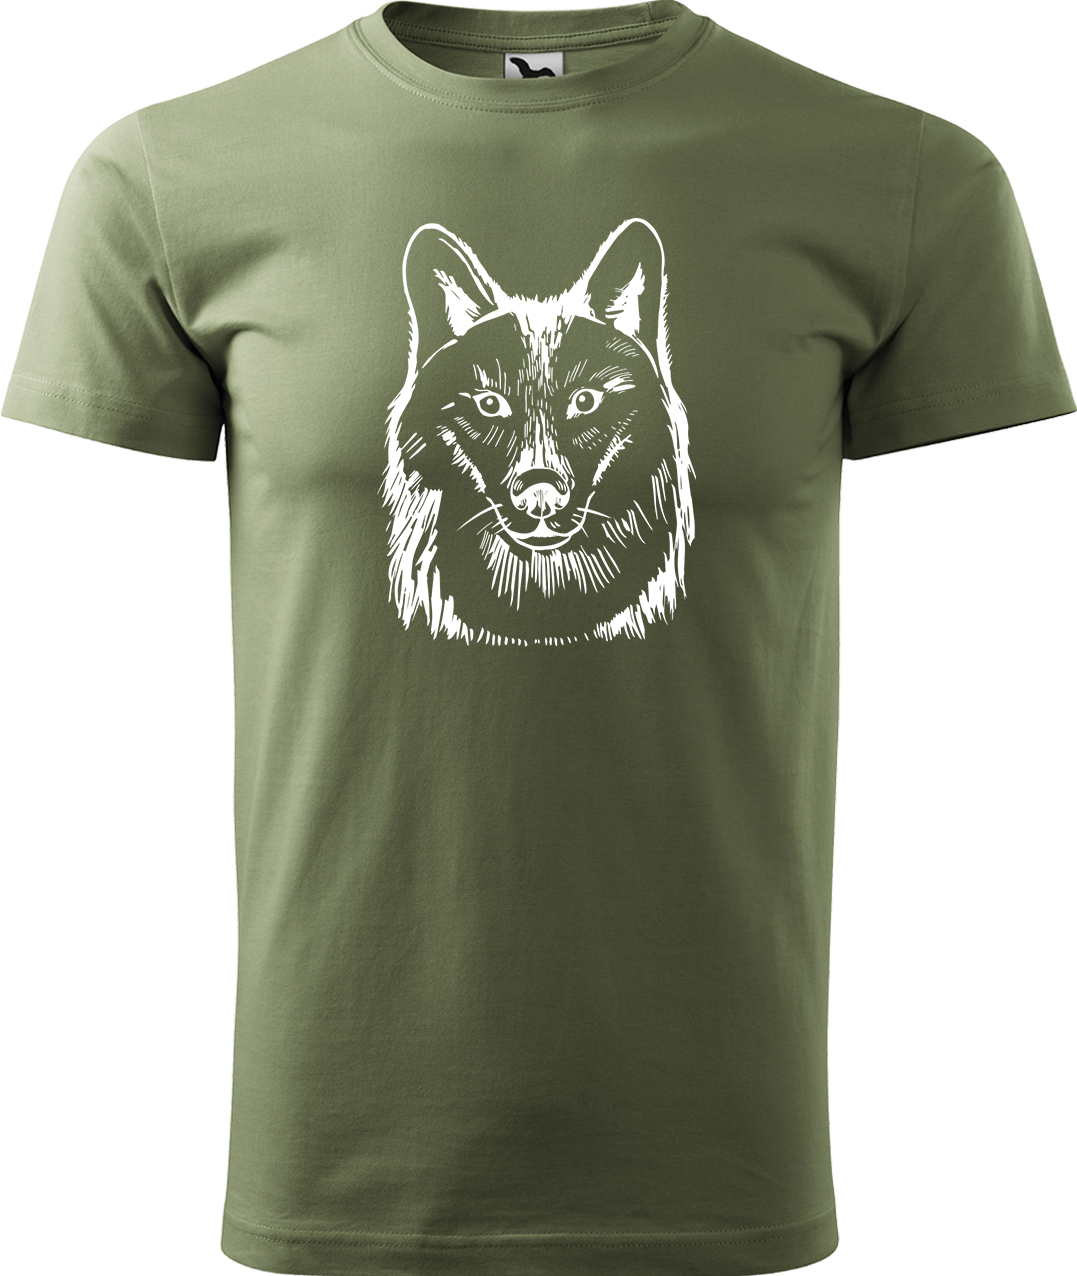 Pánské tričko s vlkem - Kresba vlka Velikost: XL, Barva: Světlá khaki (28), Střih: pánský